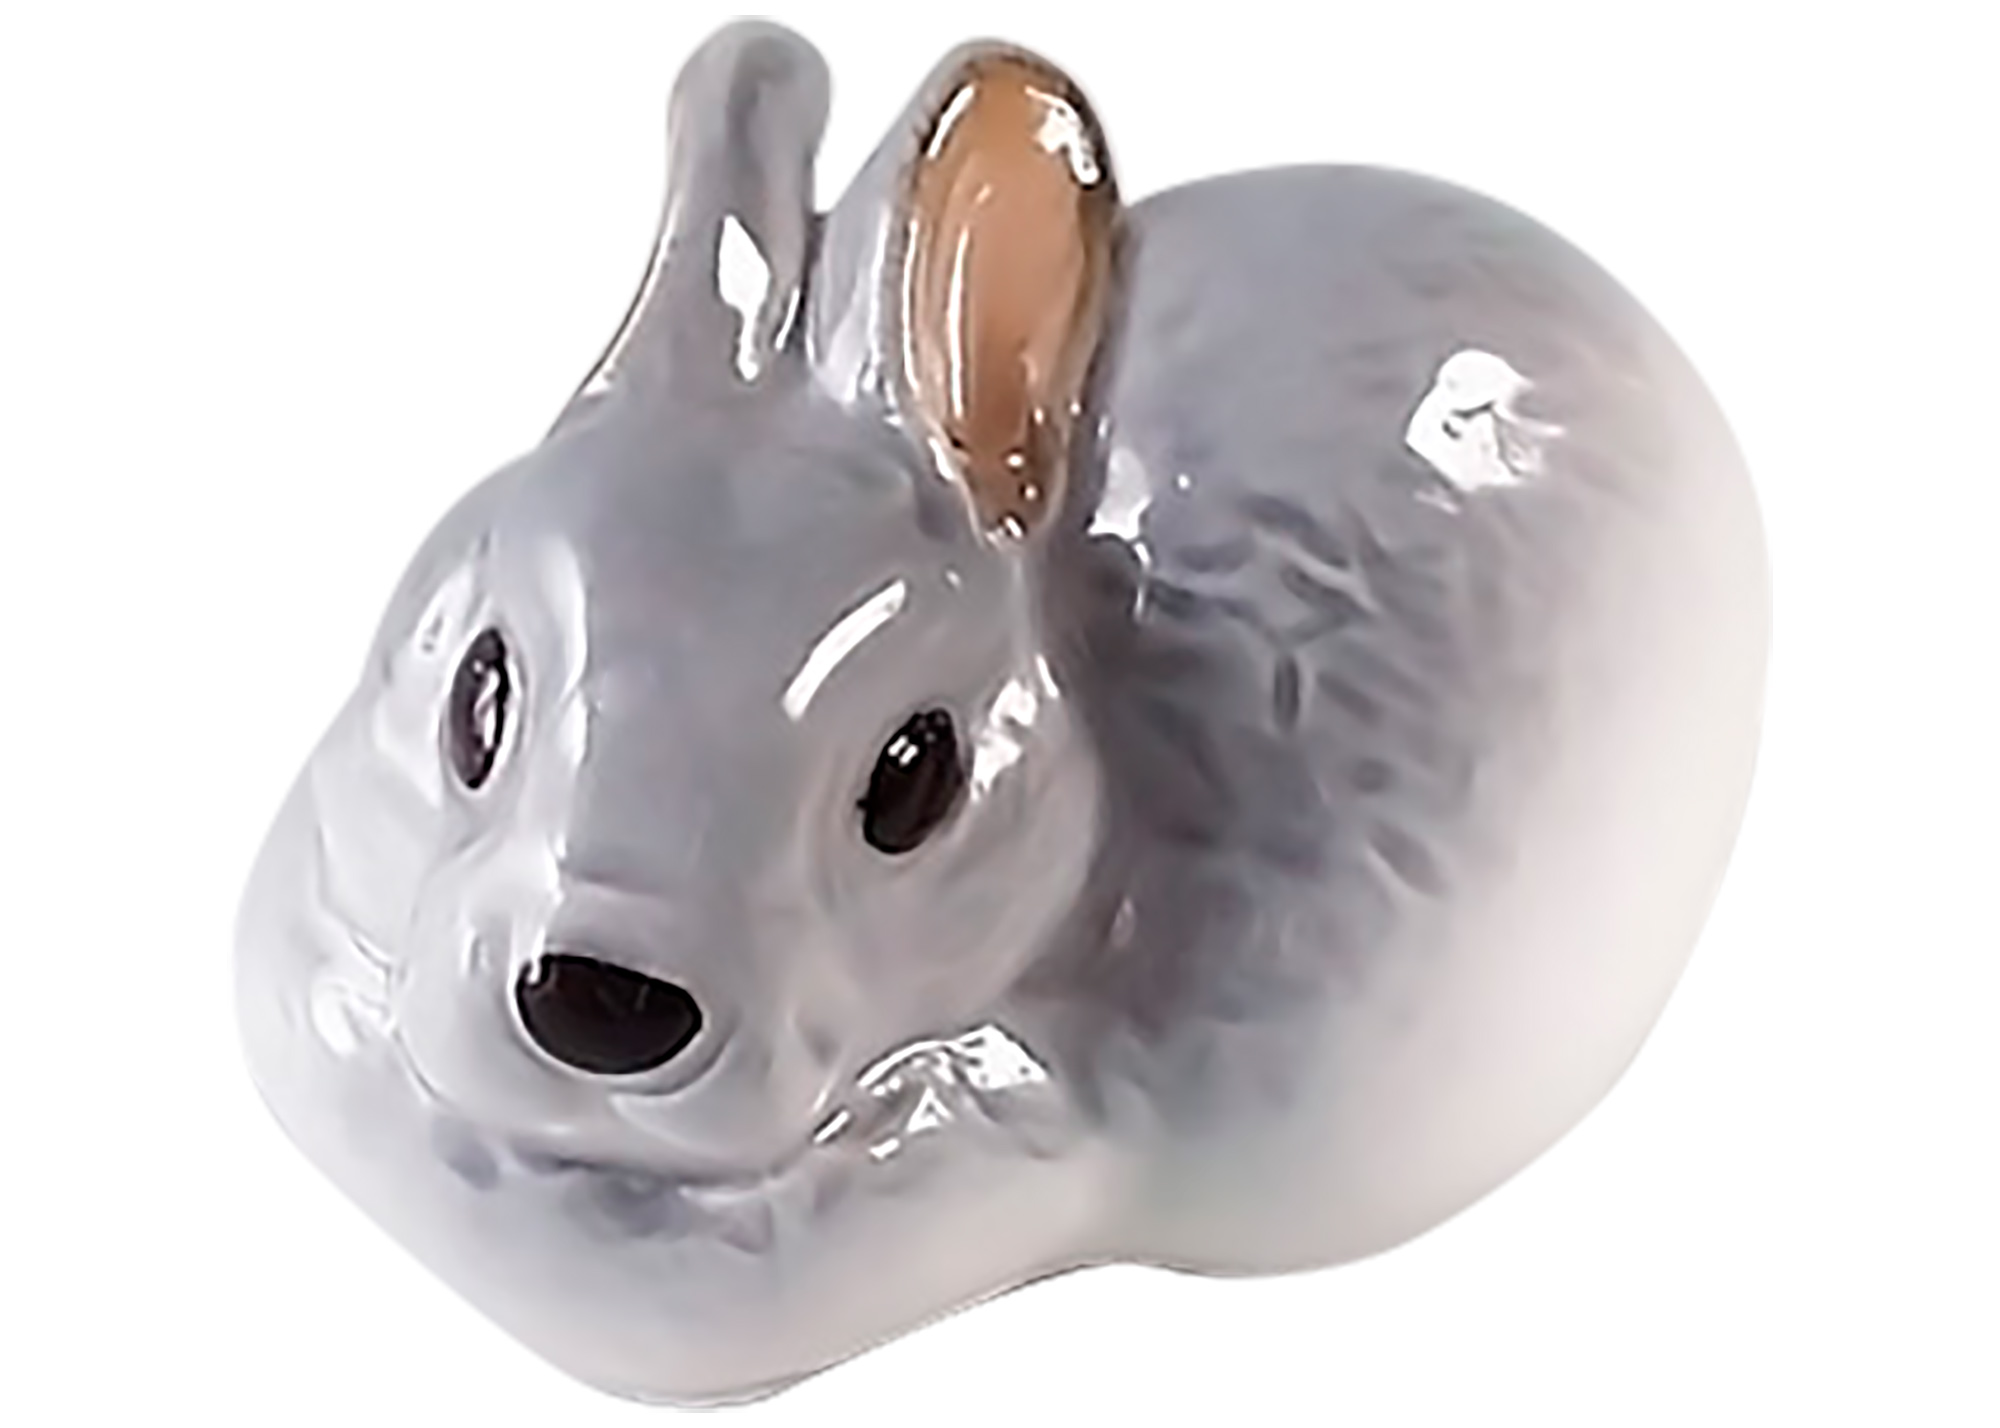 Buy Фарфоровая статуэтка "Серый кролик" at GoldenCockerel.com